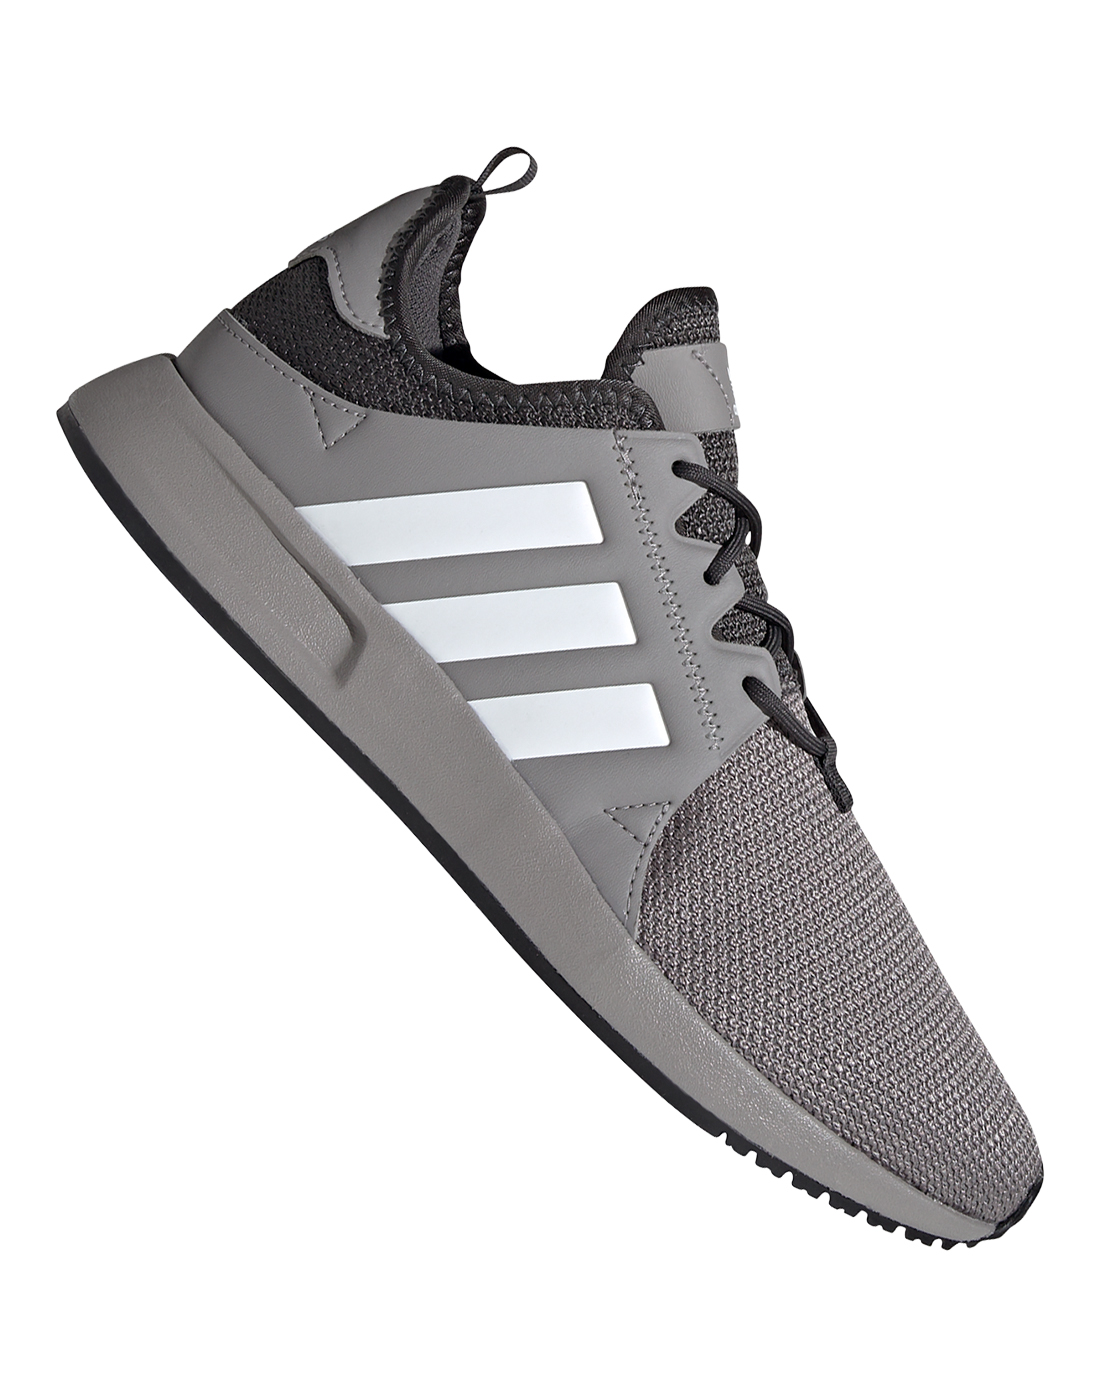 Adidas Shoes X_plr Grey Zip | lupon.gov.ph